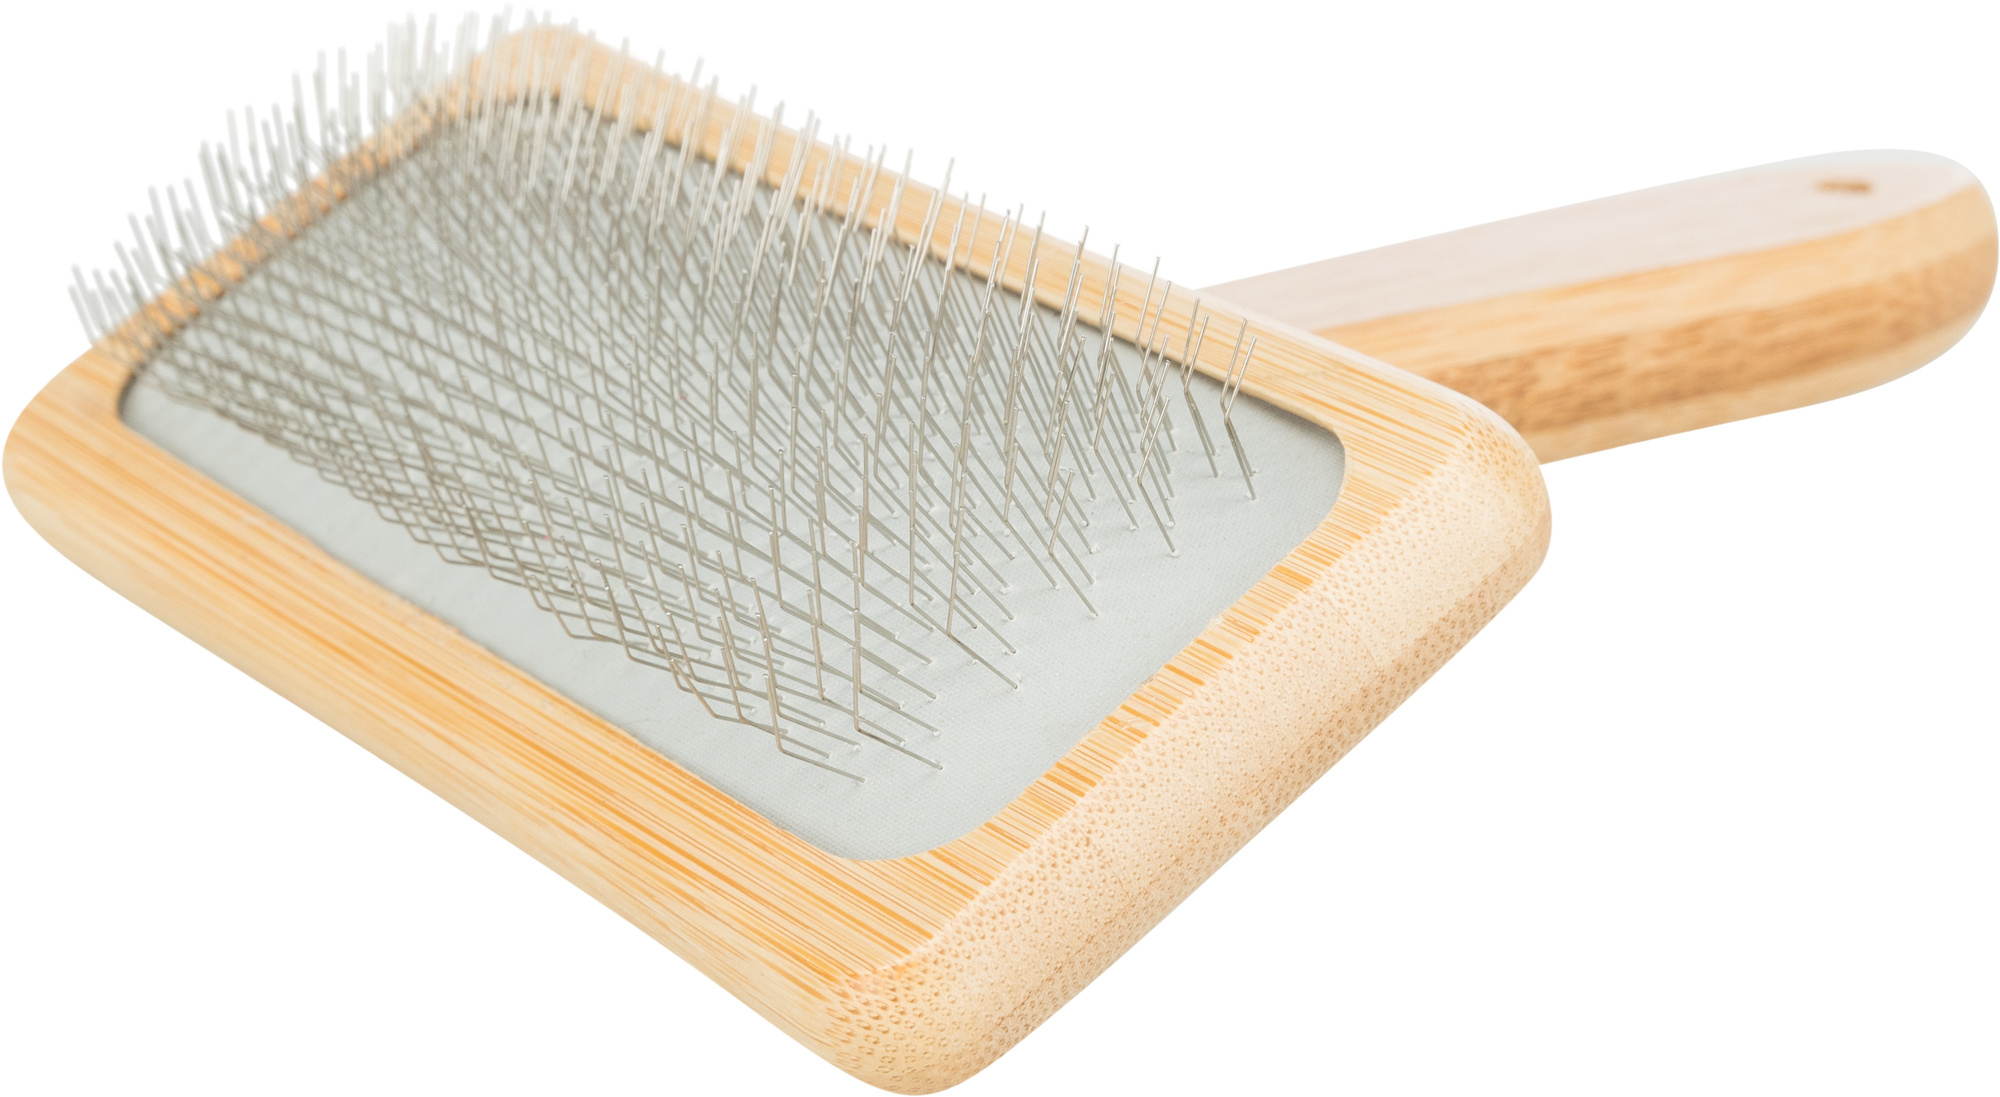 Escova suave, em bambu/metal - vários tamanhos disponíveis